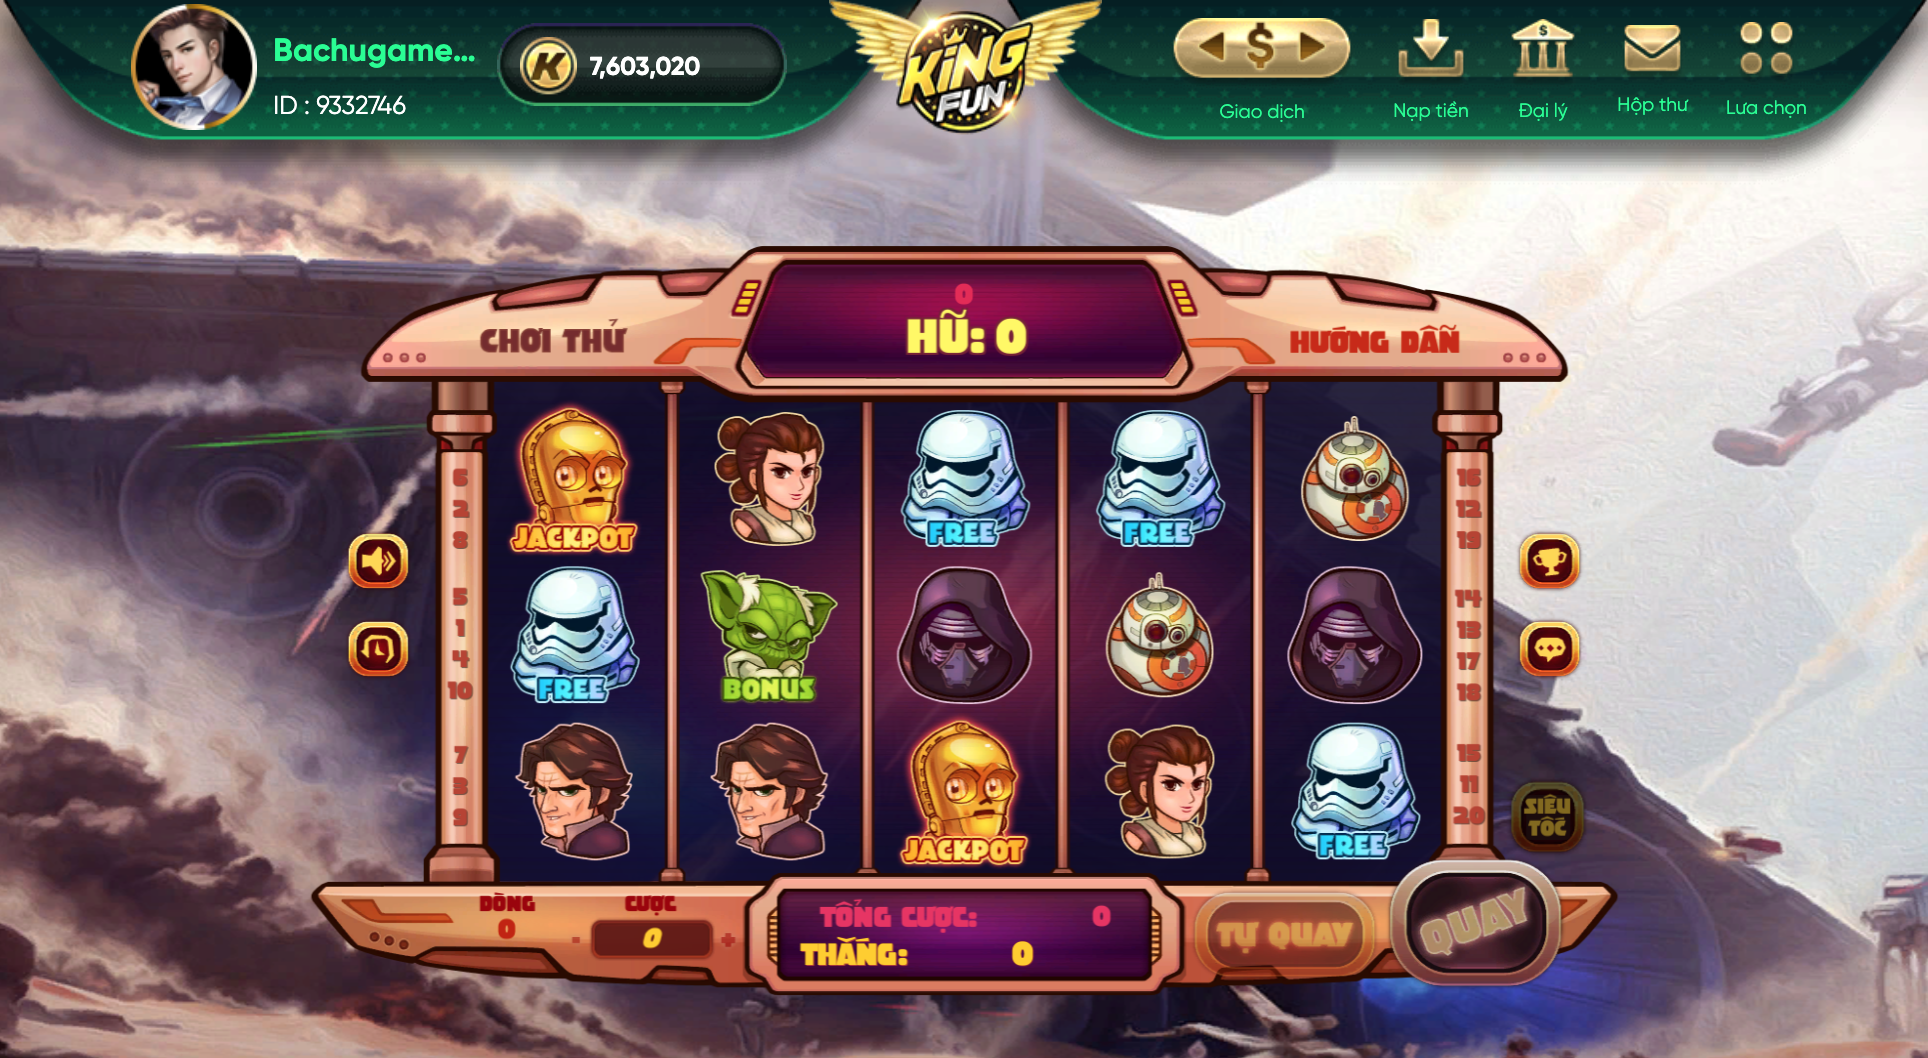 Giao diện 1 slot game tại Kingfun